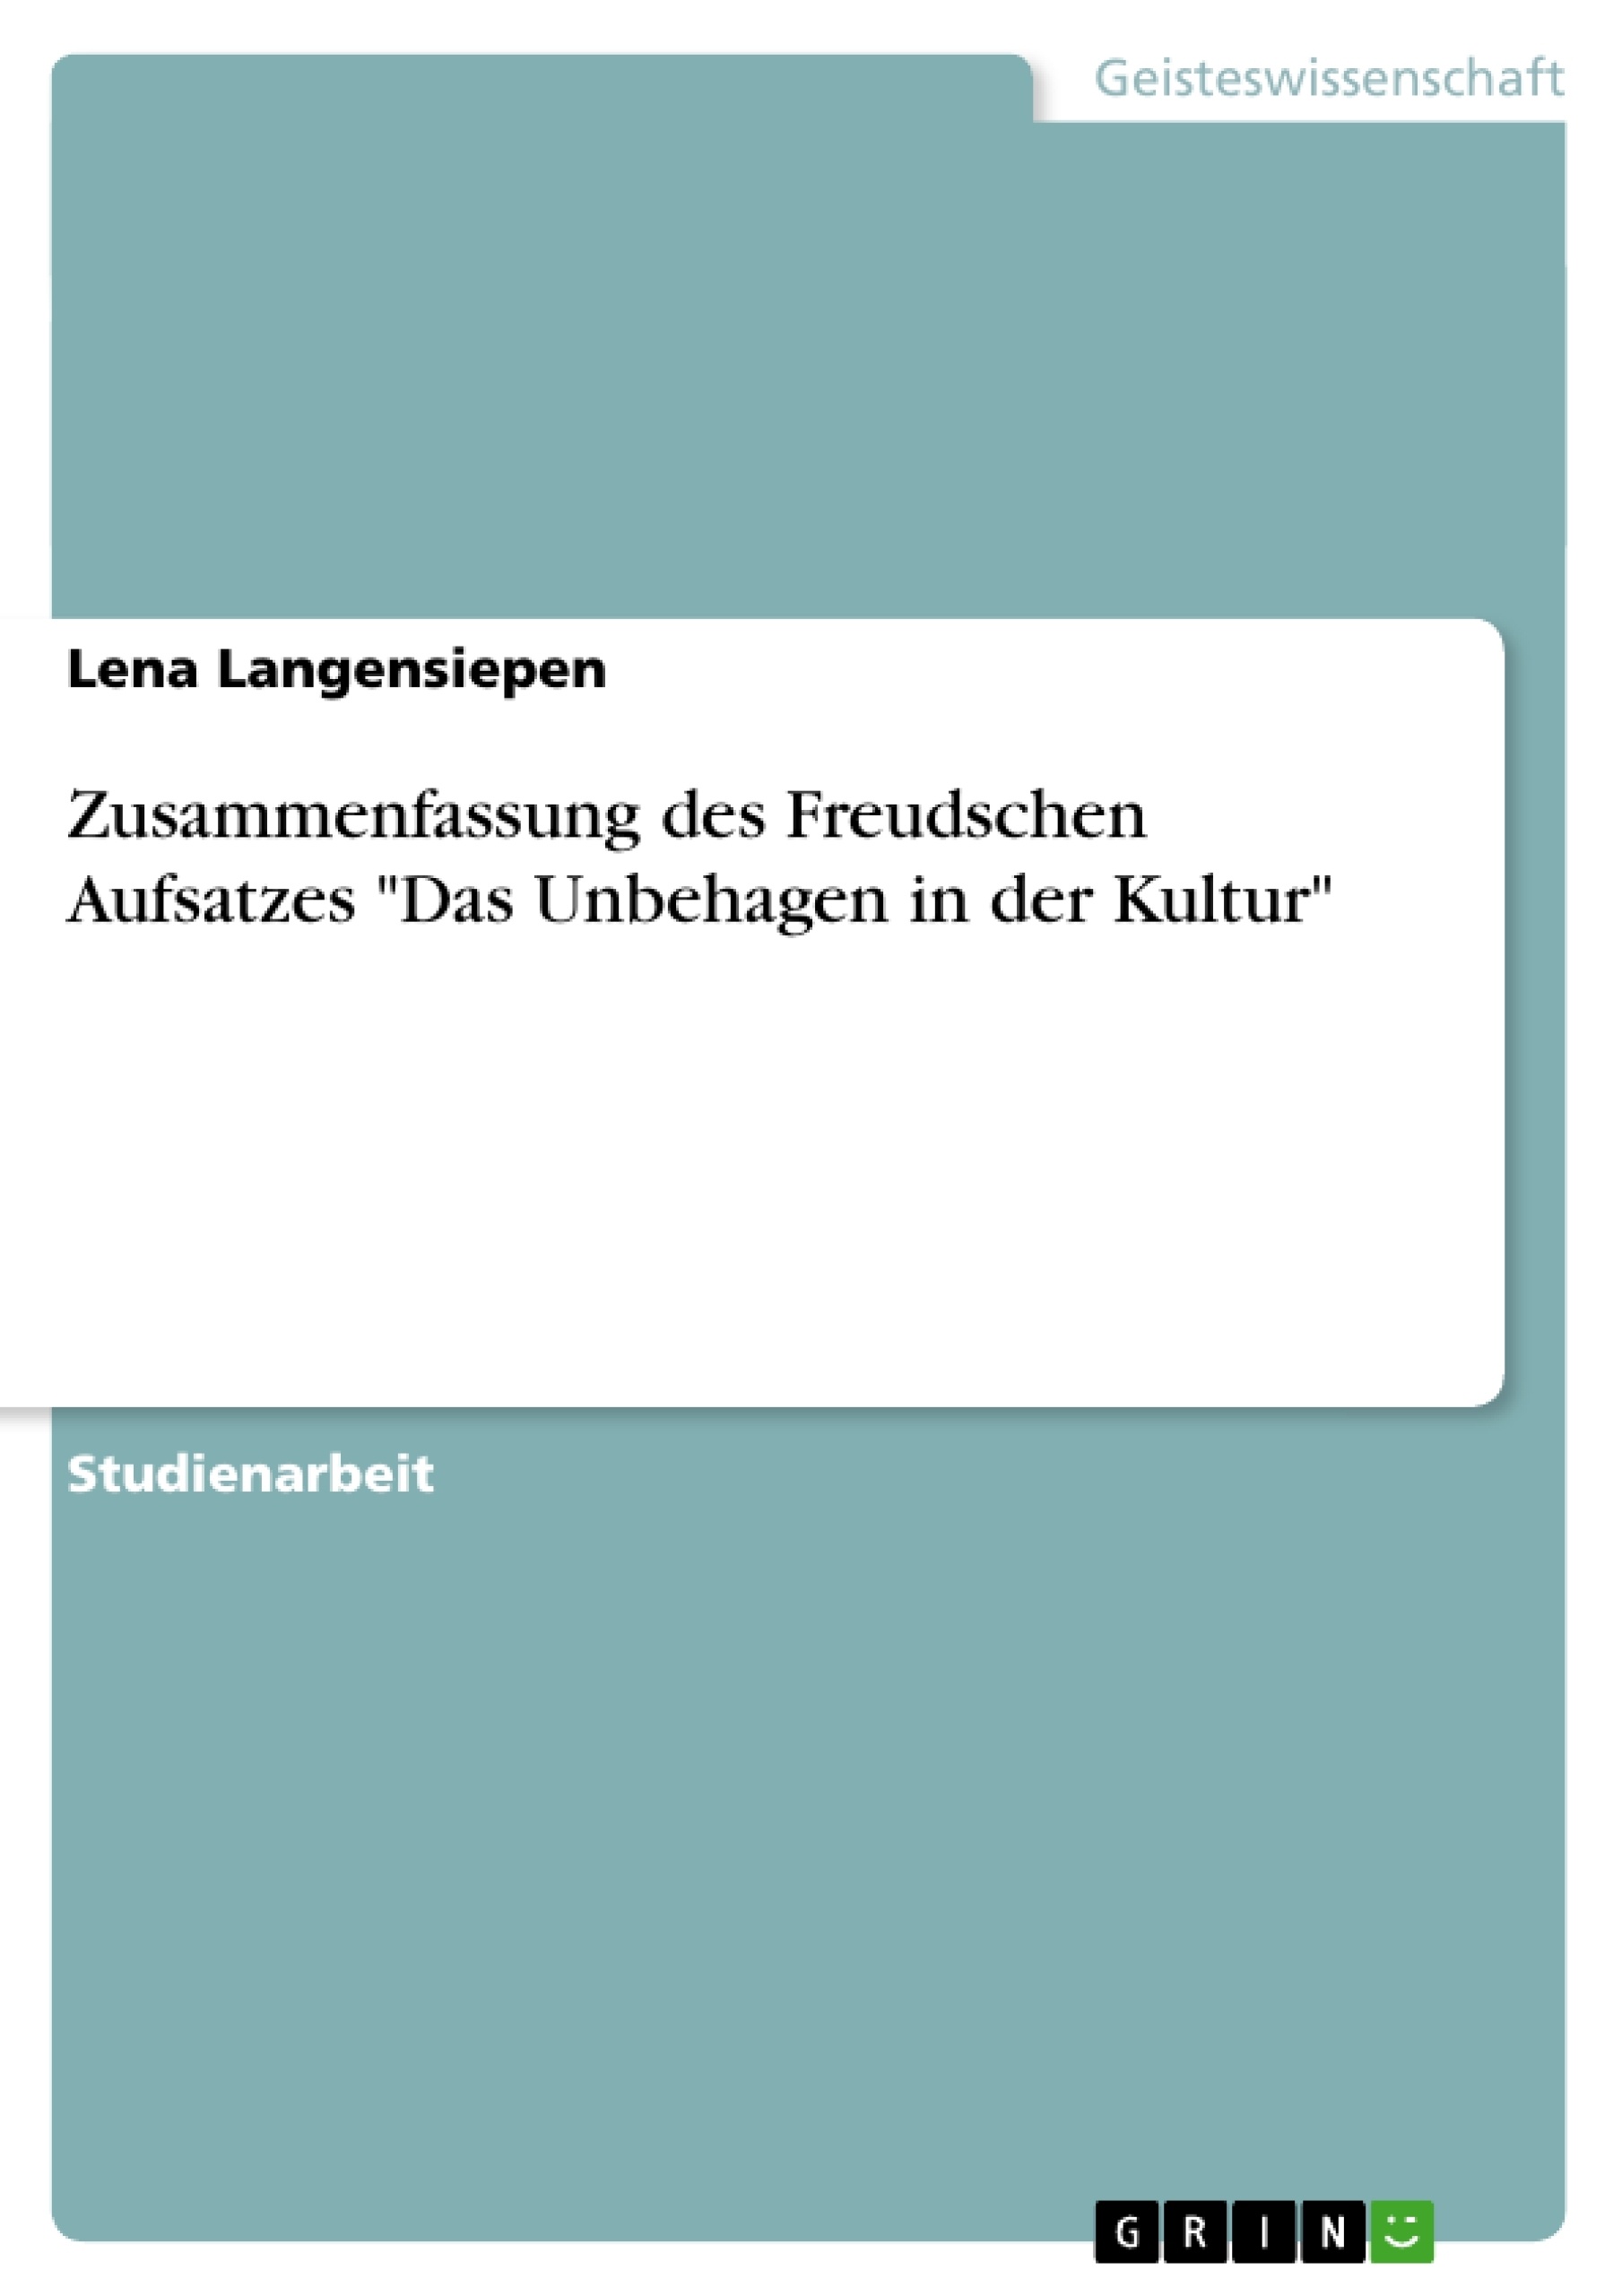 Titre: Zusammenfassung des Freudschen Aufsatzes "Das Unbehagen in der Kultur"